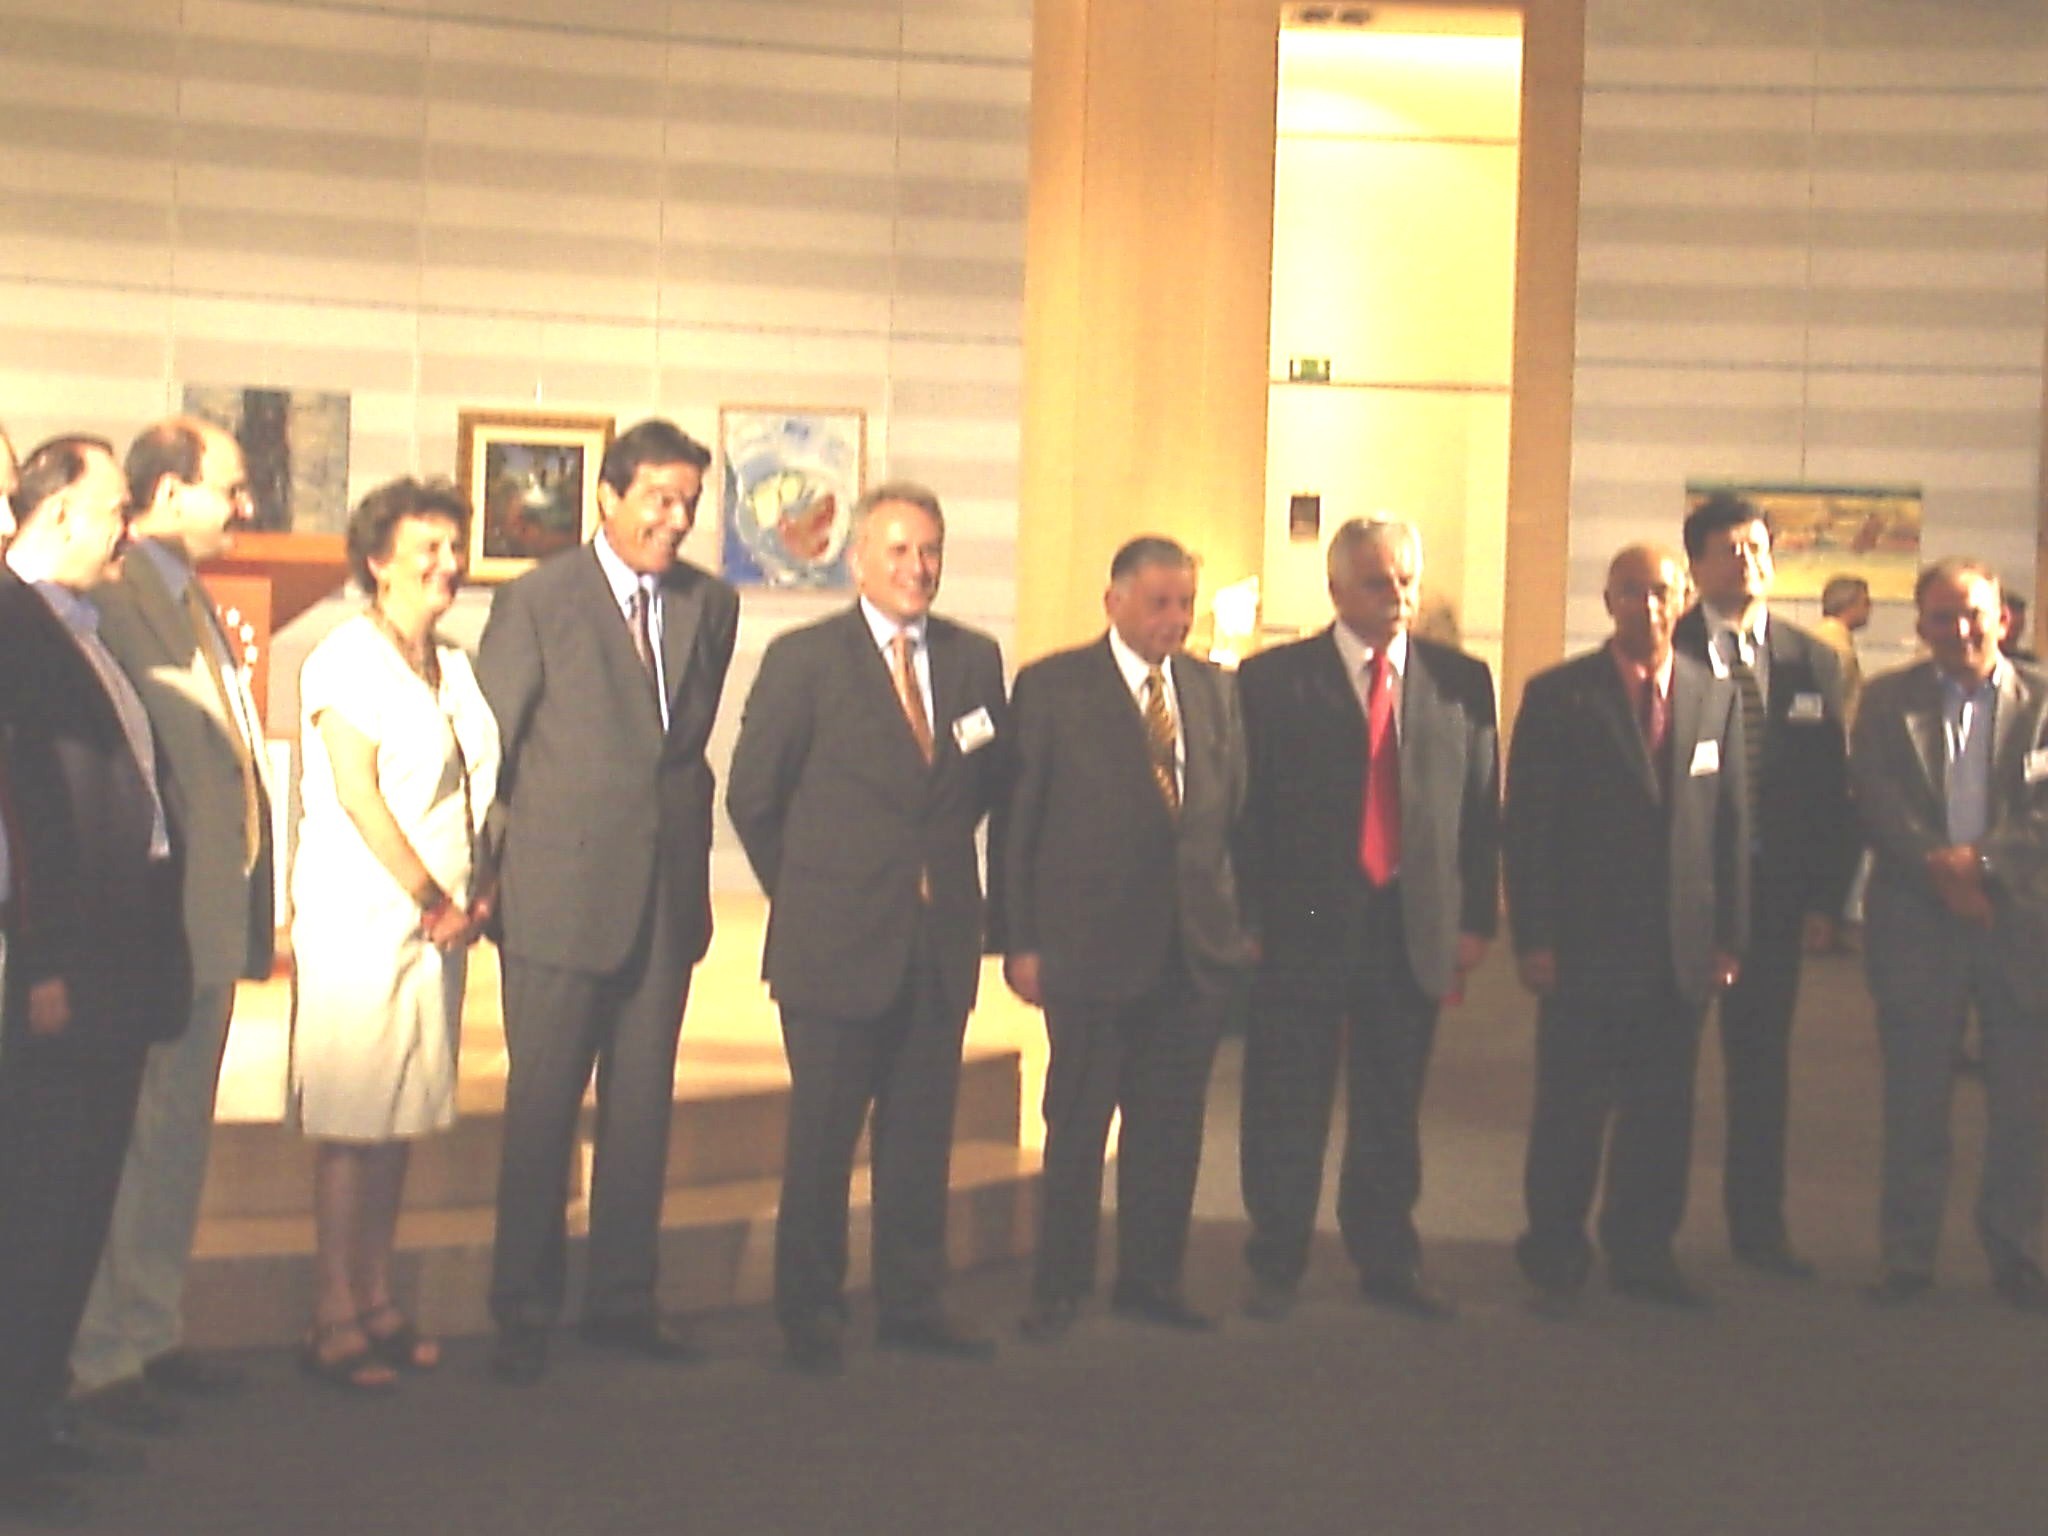 2004 - "Παρίου Φωτός Αντίδωρον" - Αθήνα και στην έδρα του Ευρωπαϊκού Συμβουλίου στις Βρυξέλλες